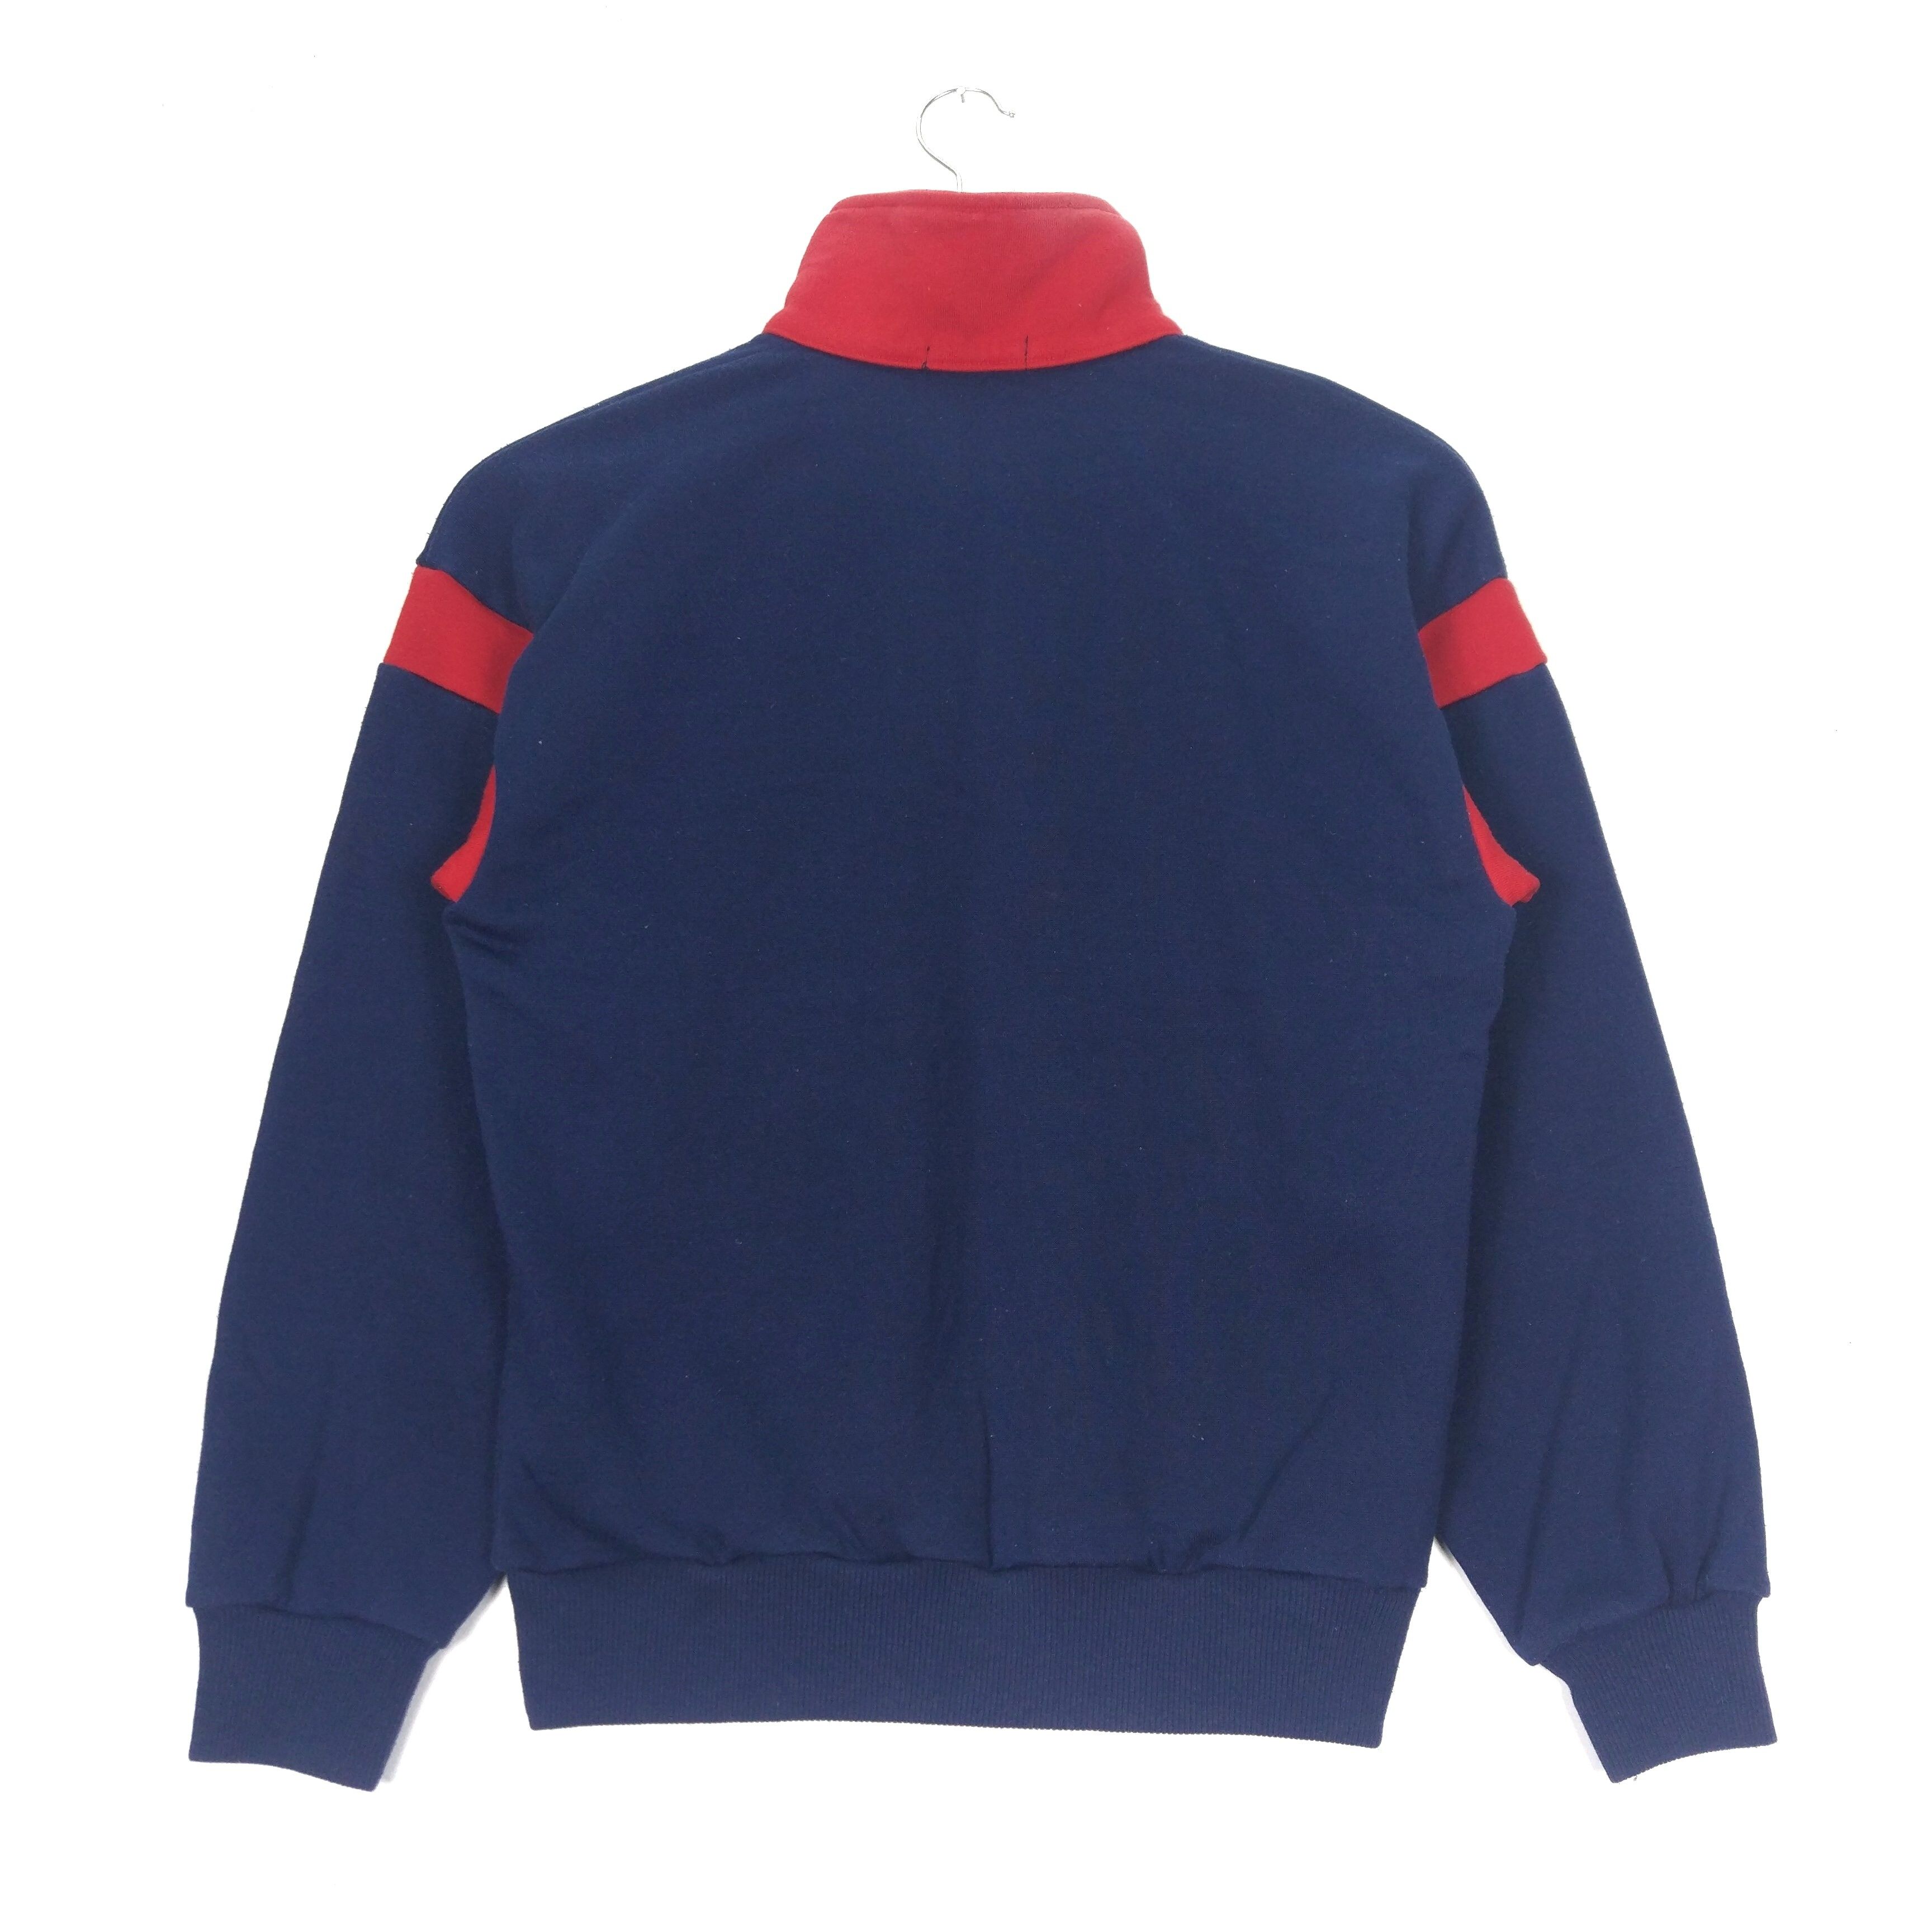 Vintage 90s Adidas Trefoil Halfzip Jumper Sweatshirt - 2